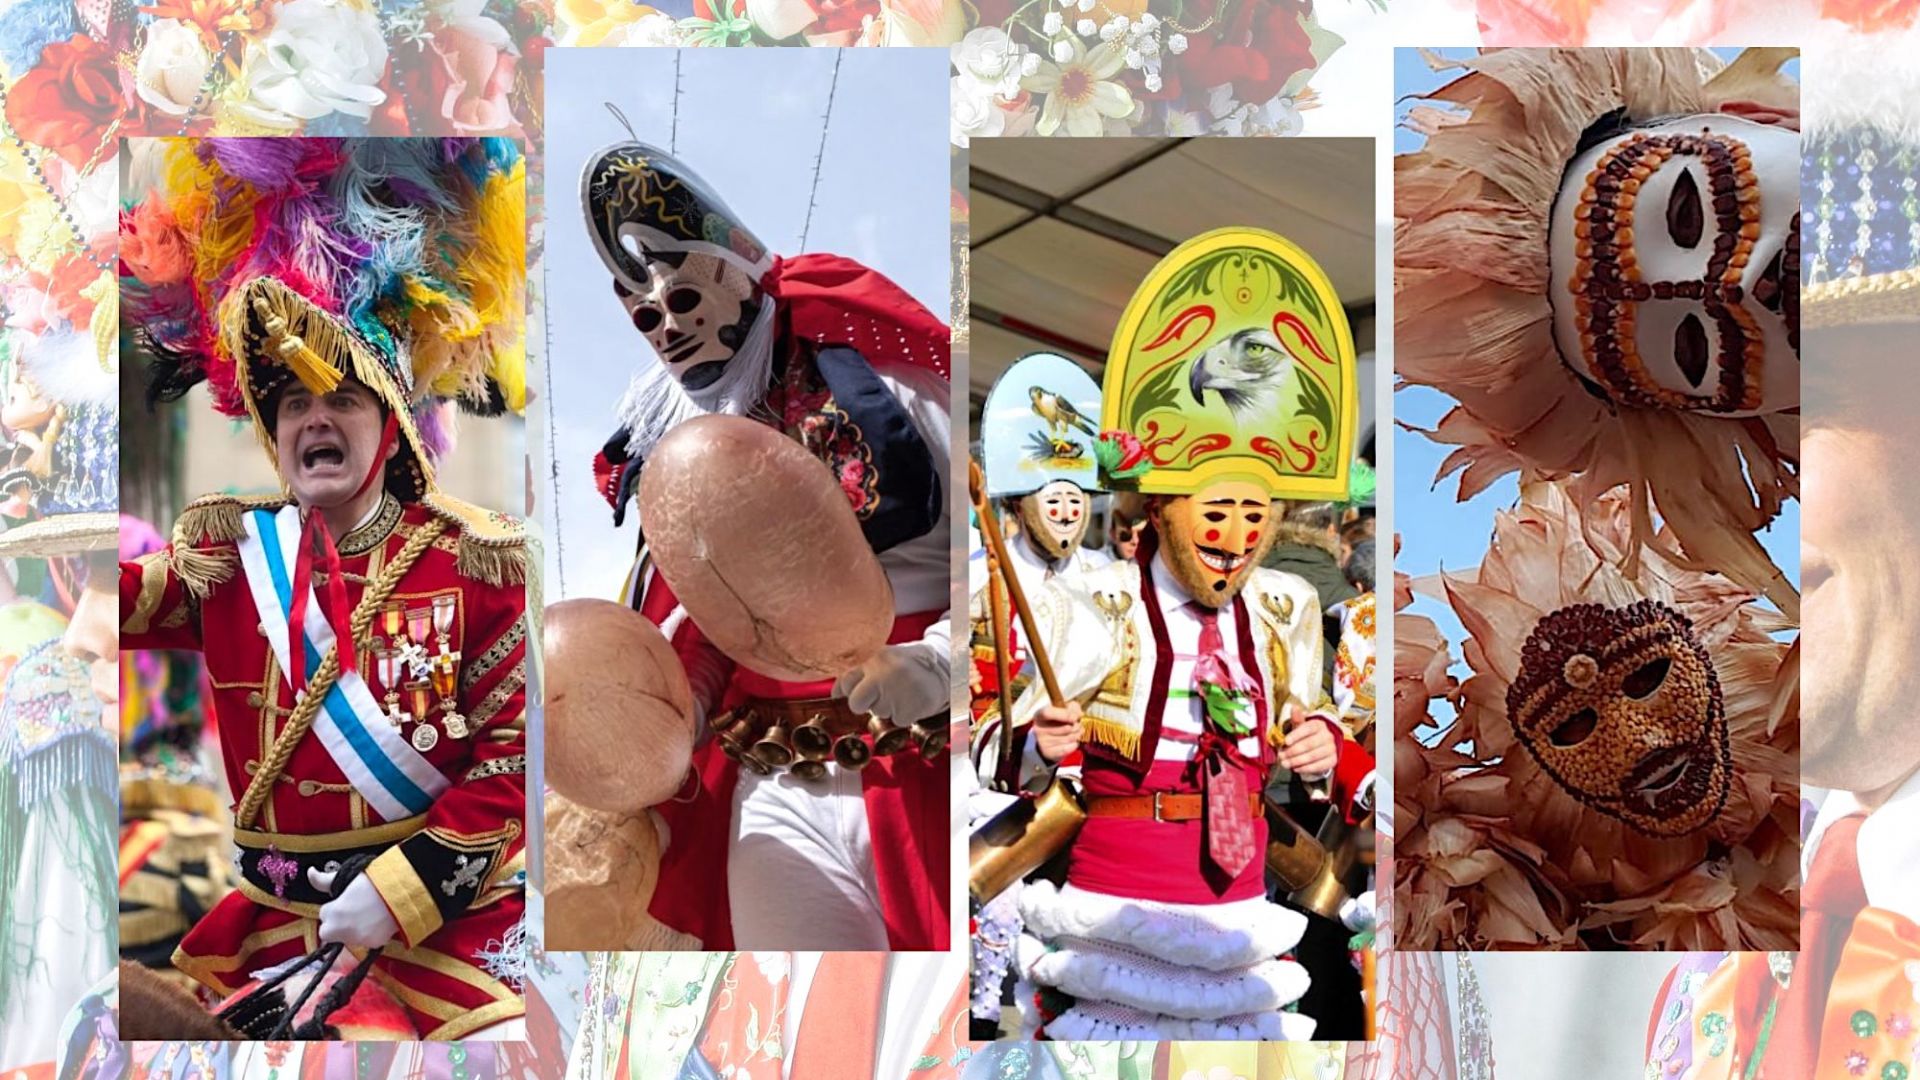 cine Durante ~ Están familiarizados Los personajes más emblemáticos de los carnavales en Galicia